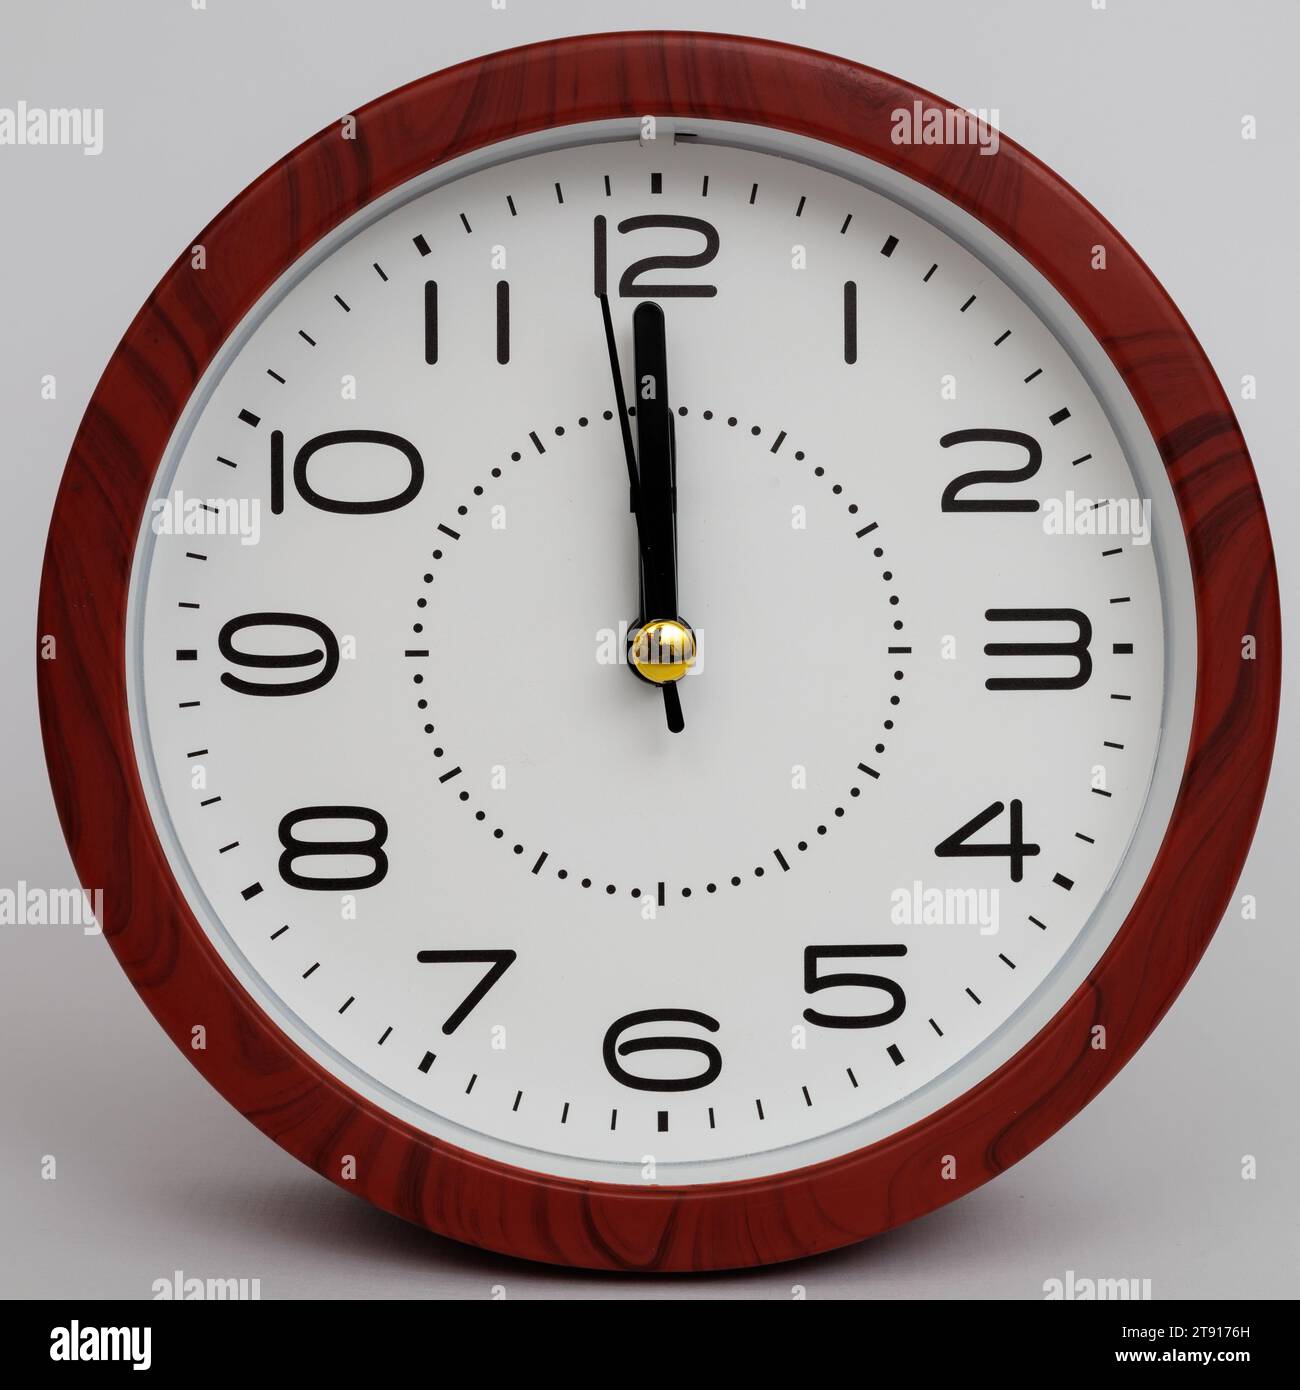 orologio analogico da tavolo isolato su sfondo bianco. cambio orologio a mezzanotte. secondi prima del nuovo anno. secondi prima del nuovo giorno. Foto Stock